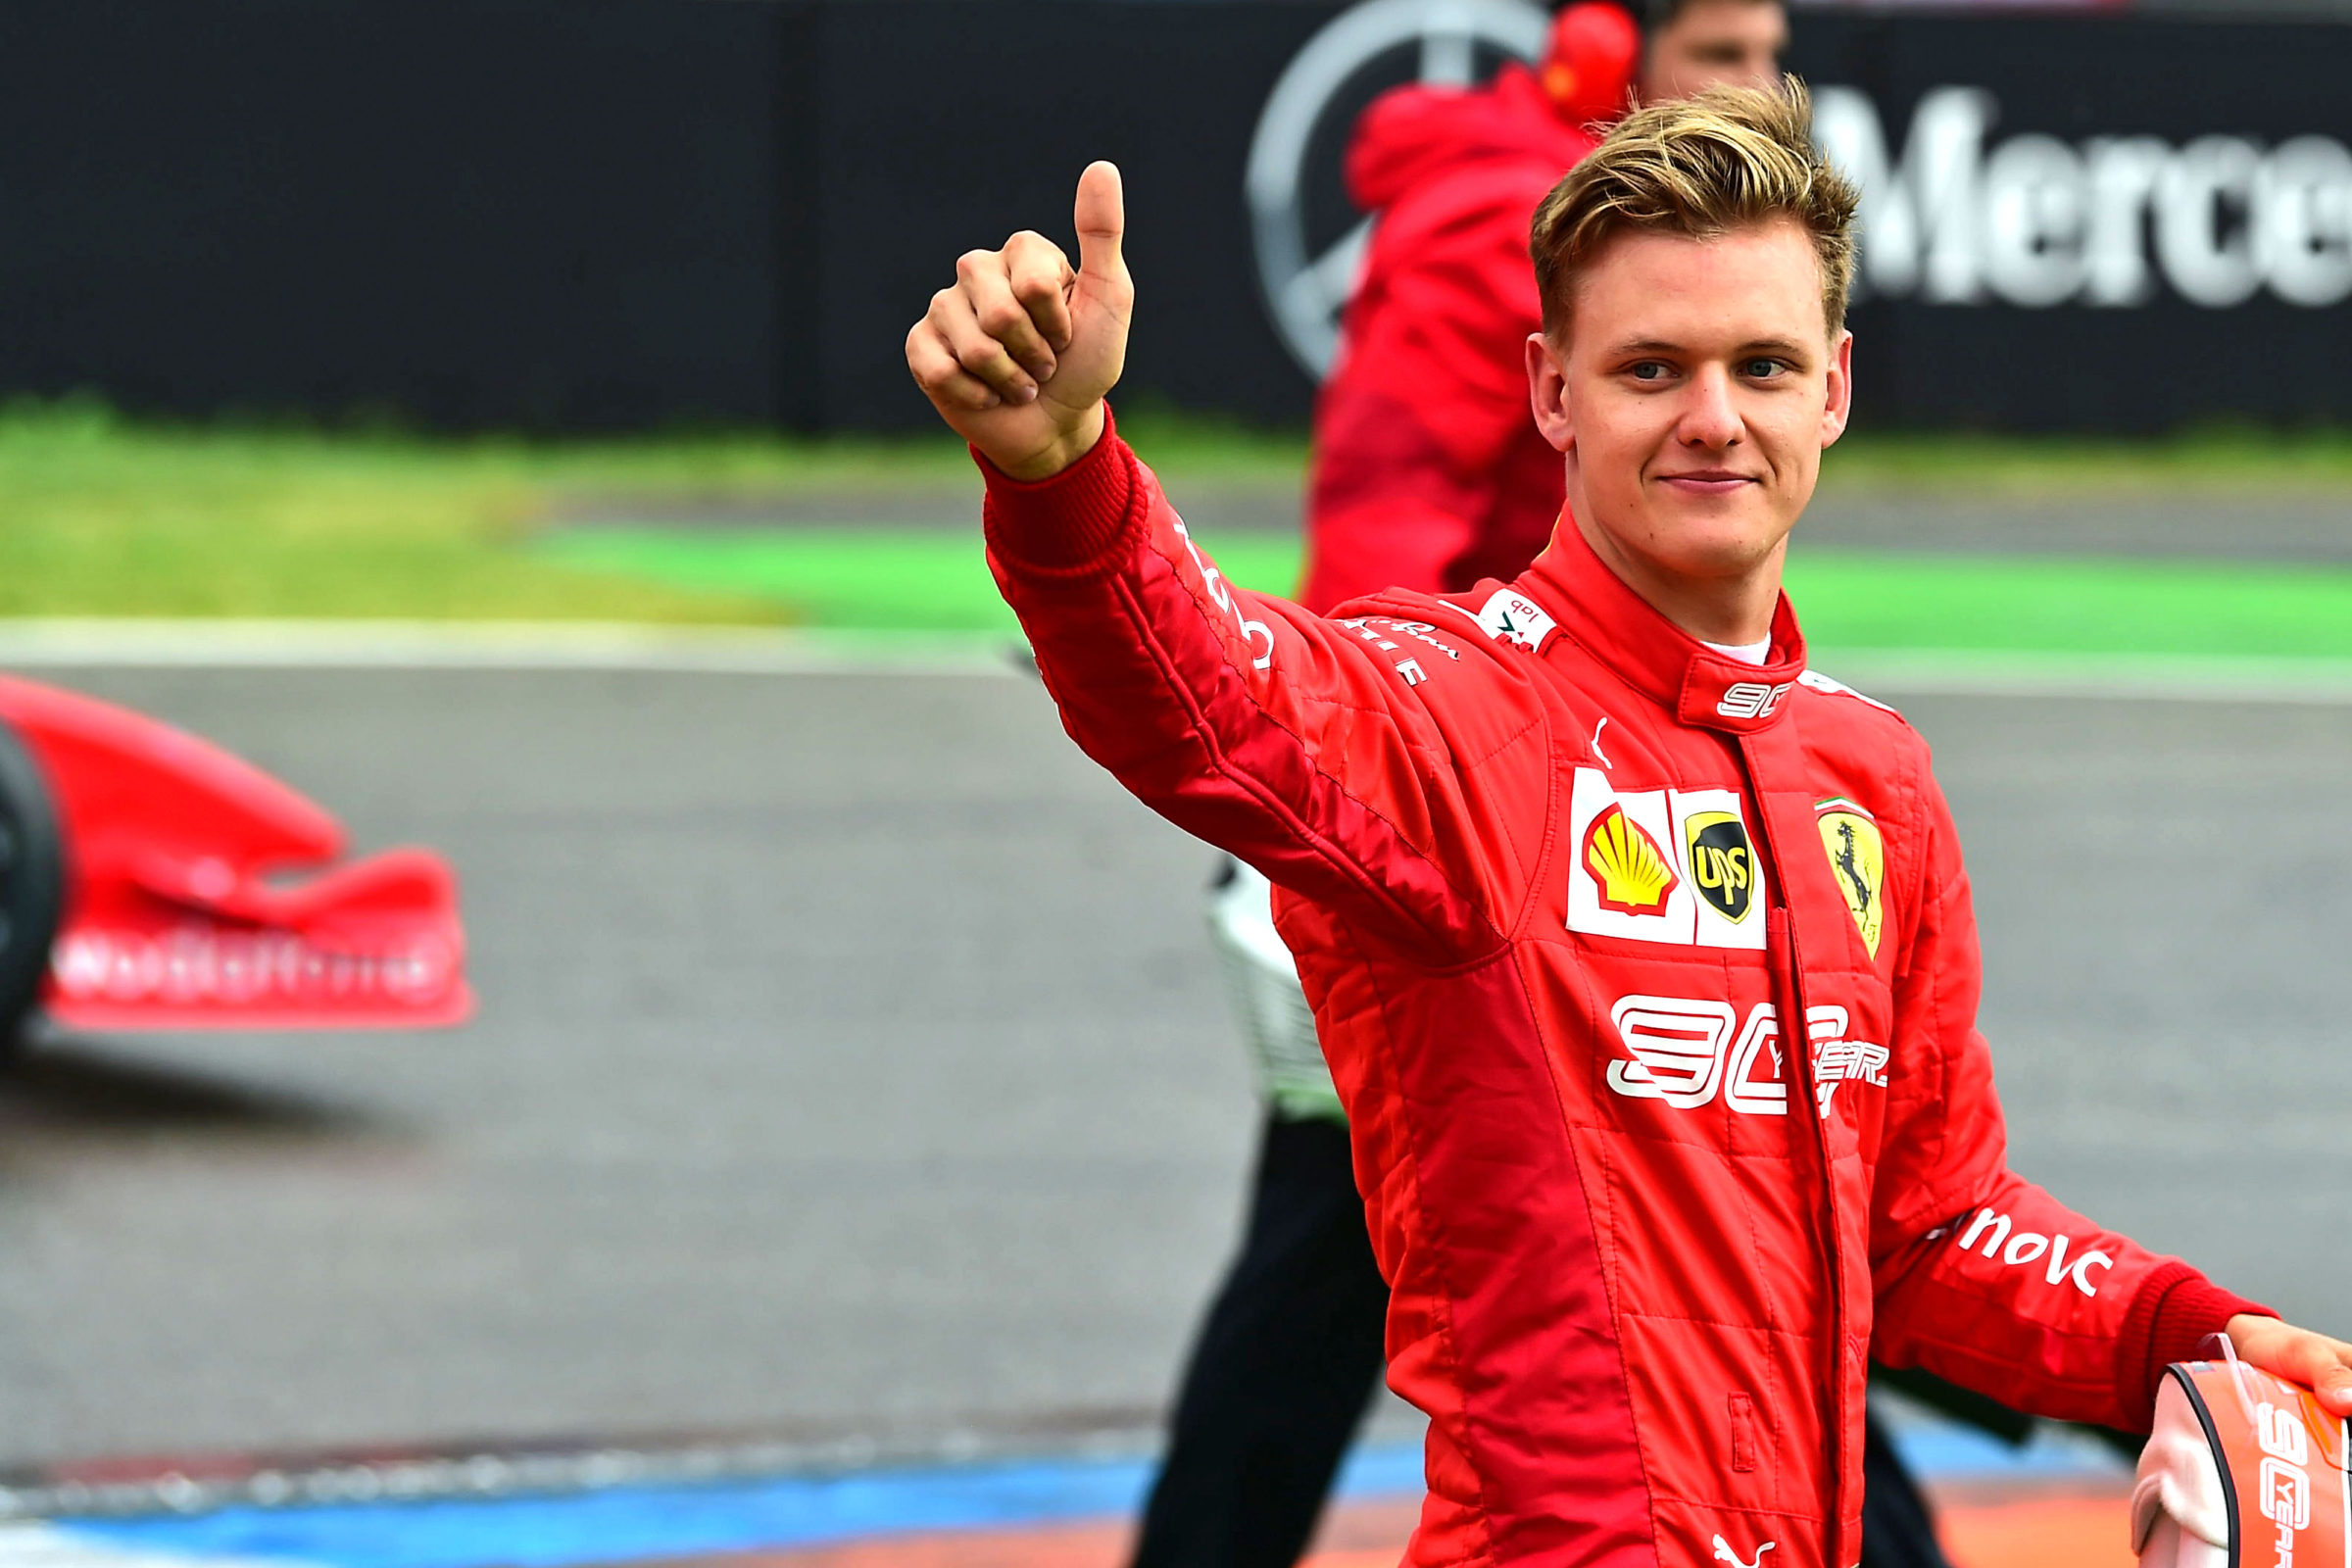 Djali i Michael Schumacherit, Mick nga edicioni i ri garon në Formula 1